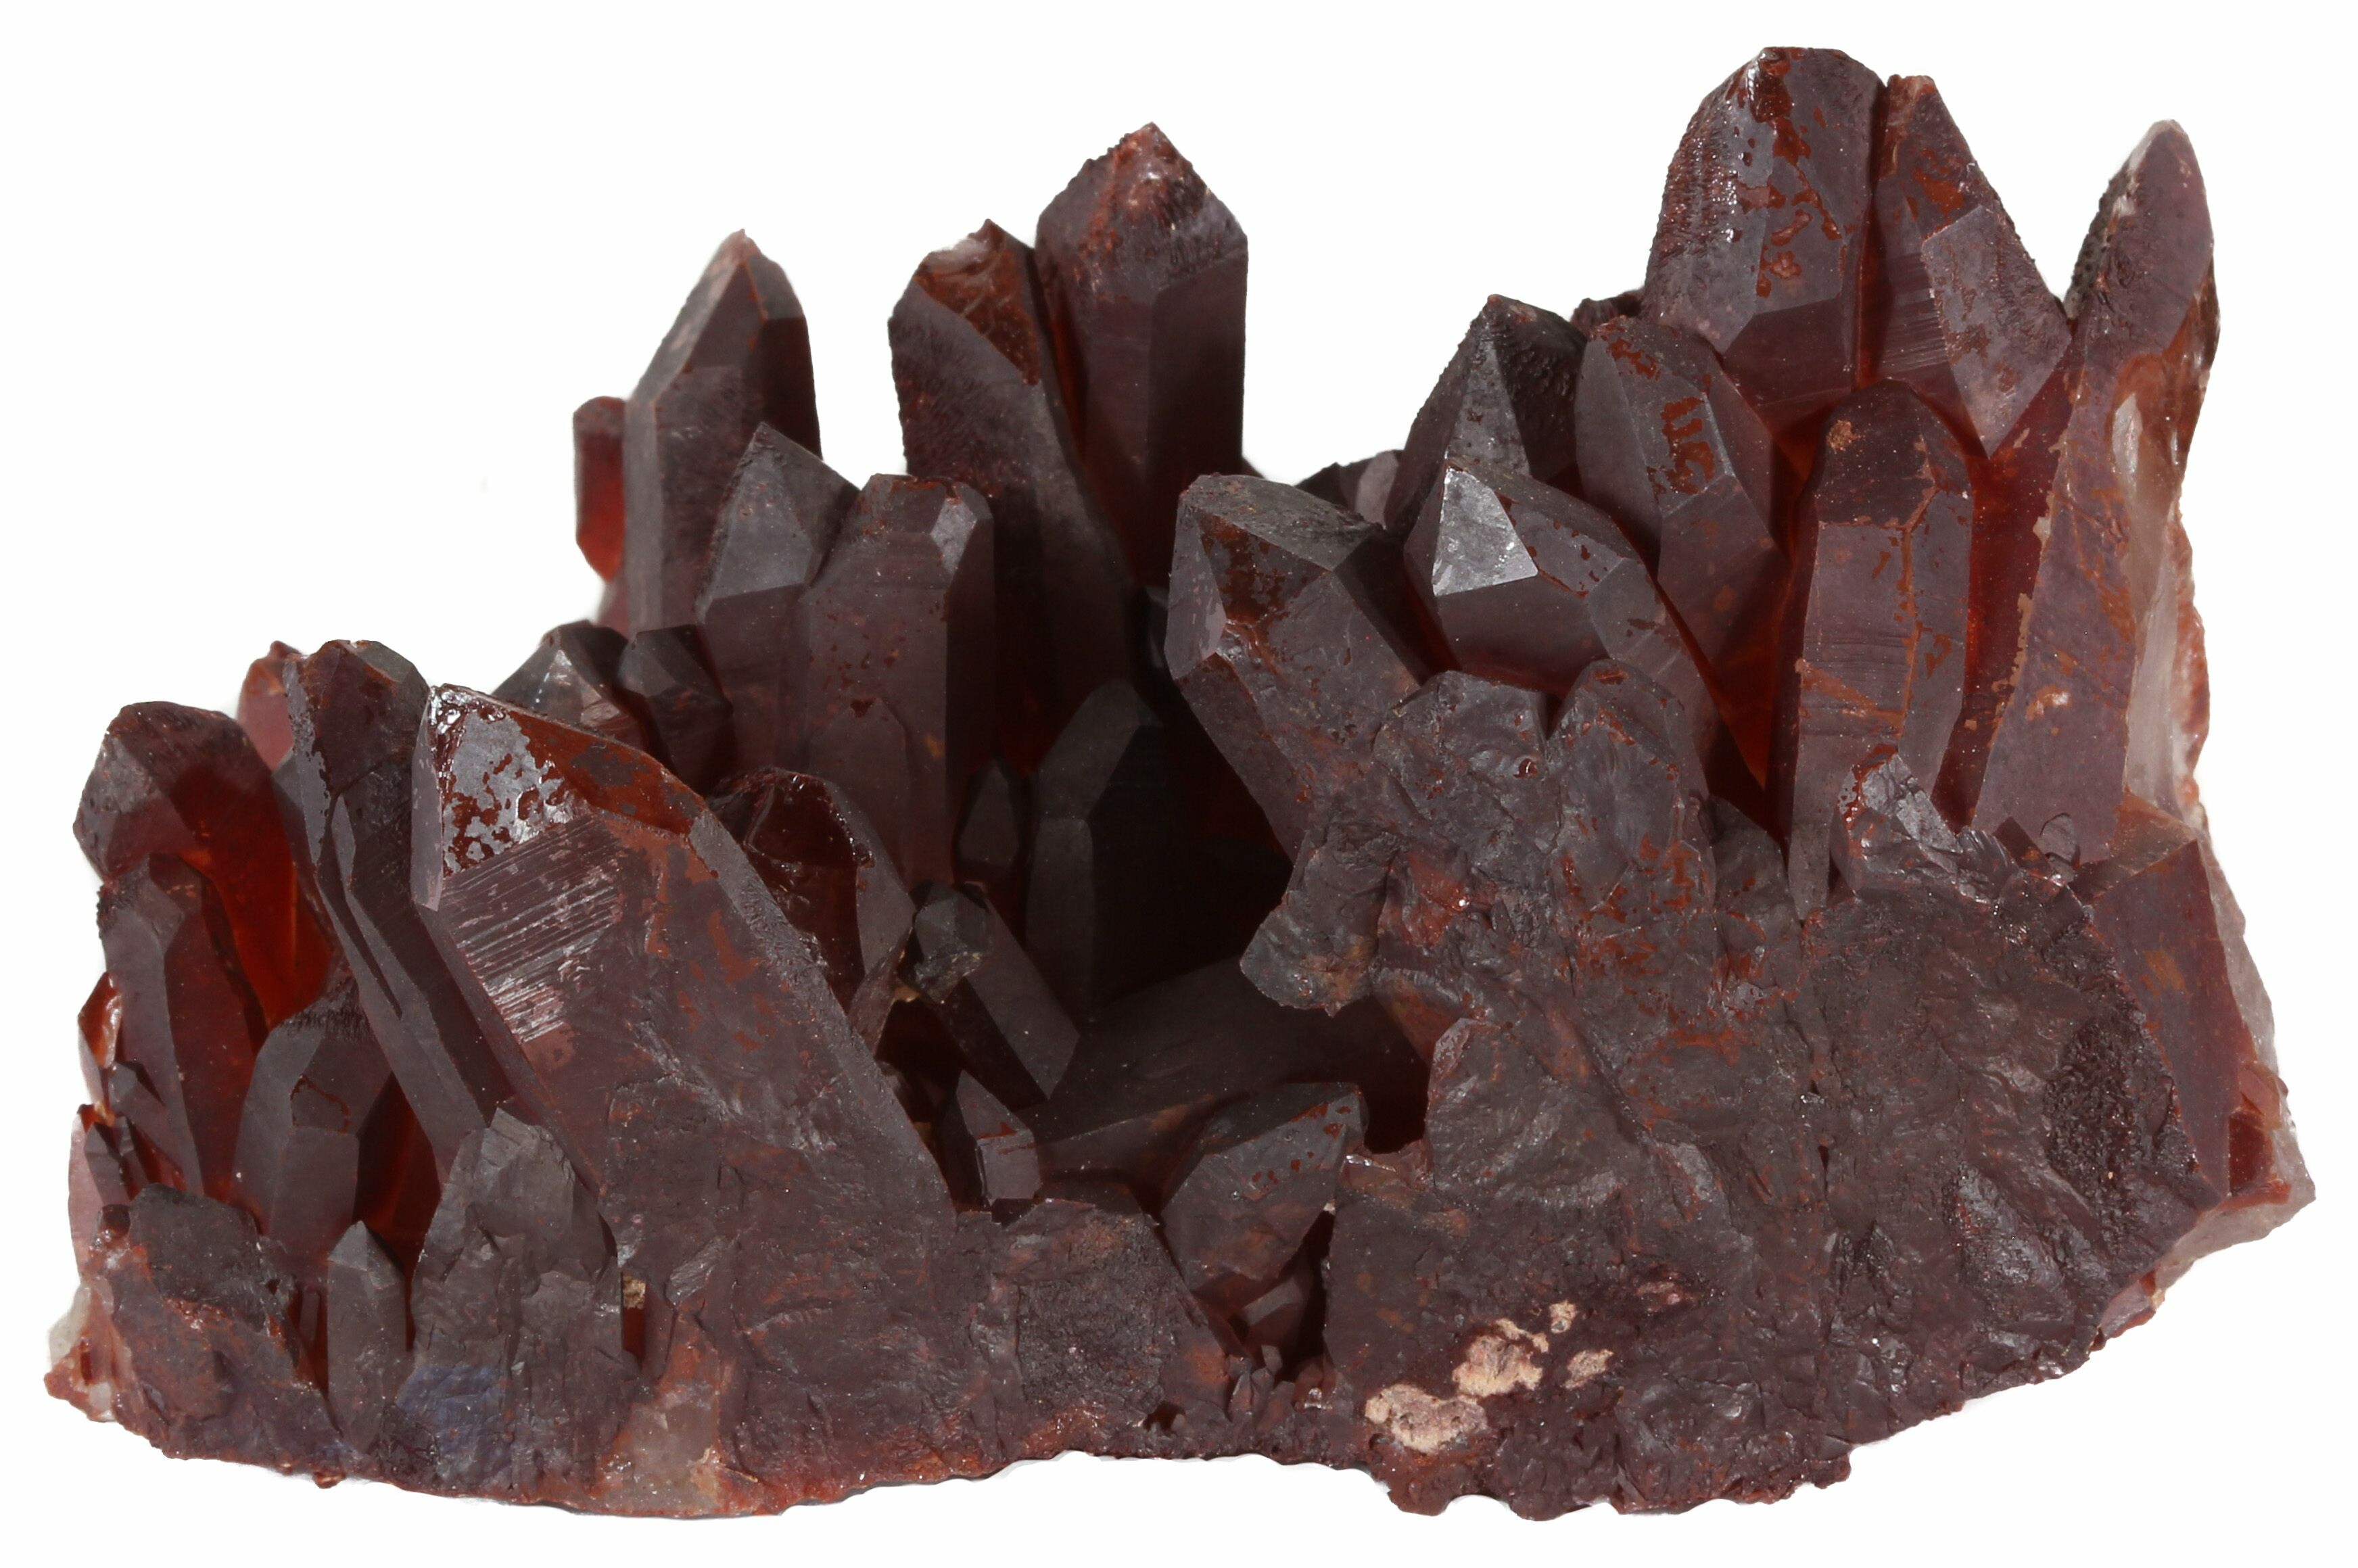 https://assets1.fossilera.com/sp/172744/morocco-red-quartz/quartz-with-iron-oxide-coating.jpg